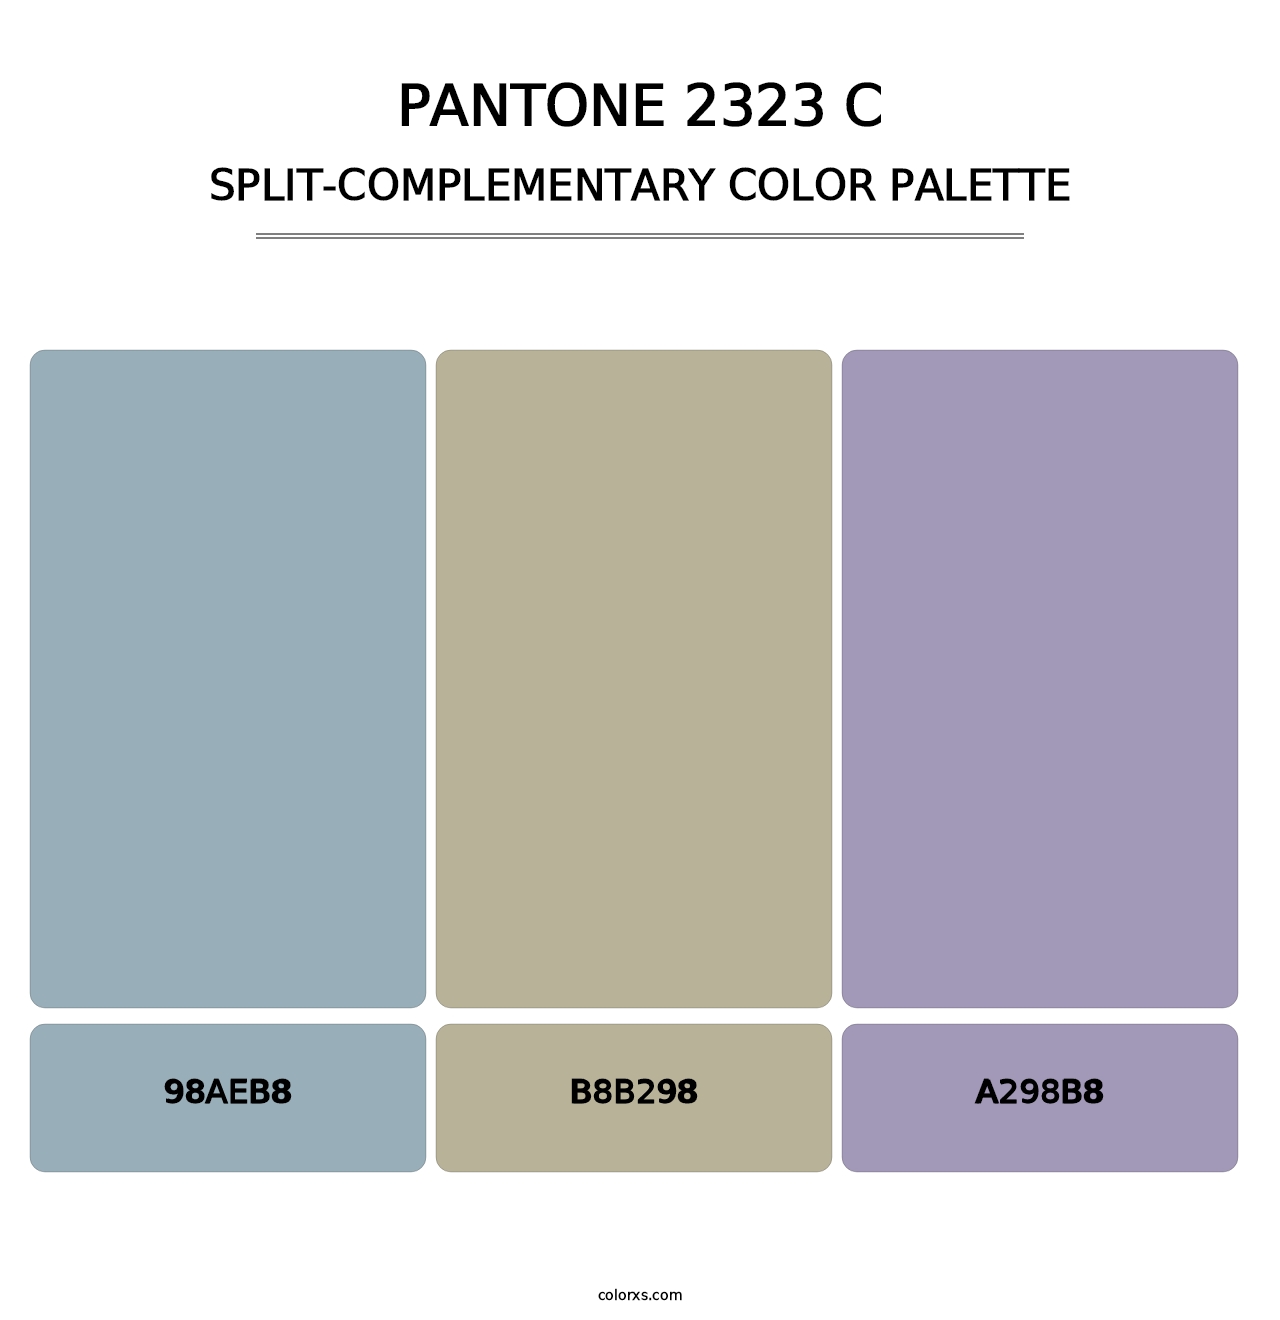 PANTONE 2323 C - Split-Complementary Color Palette